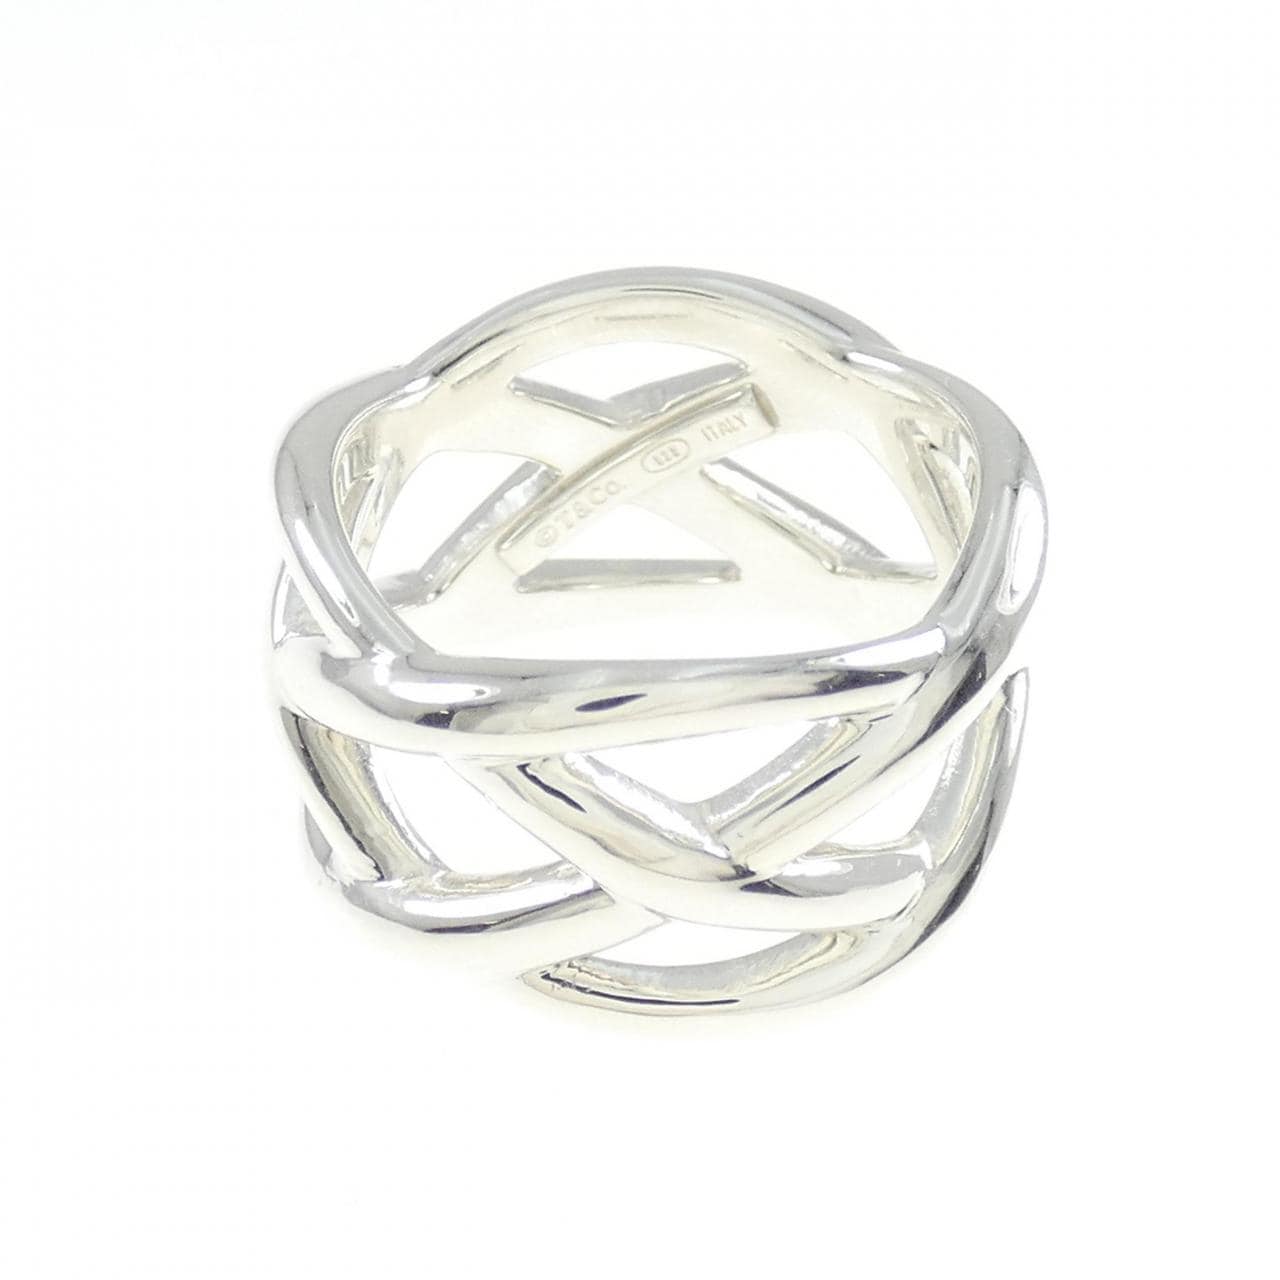 TIFFANY knot ring